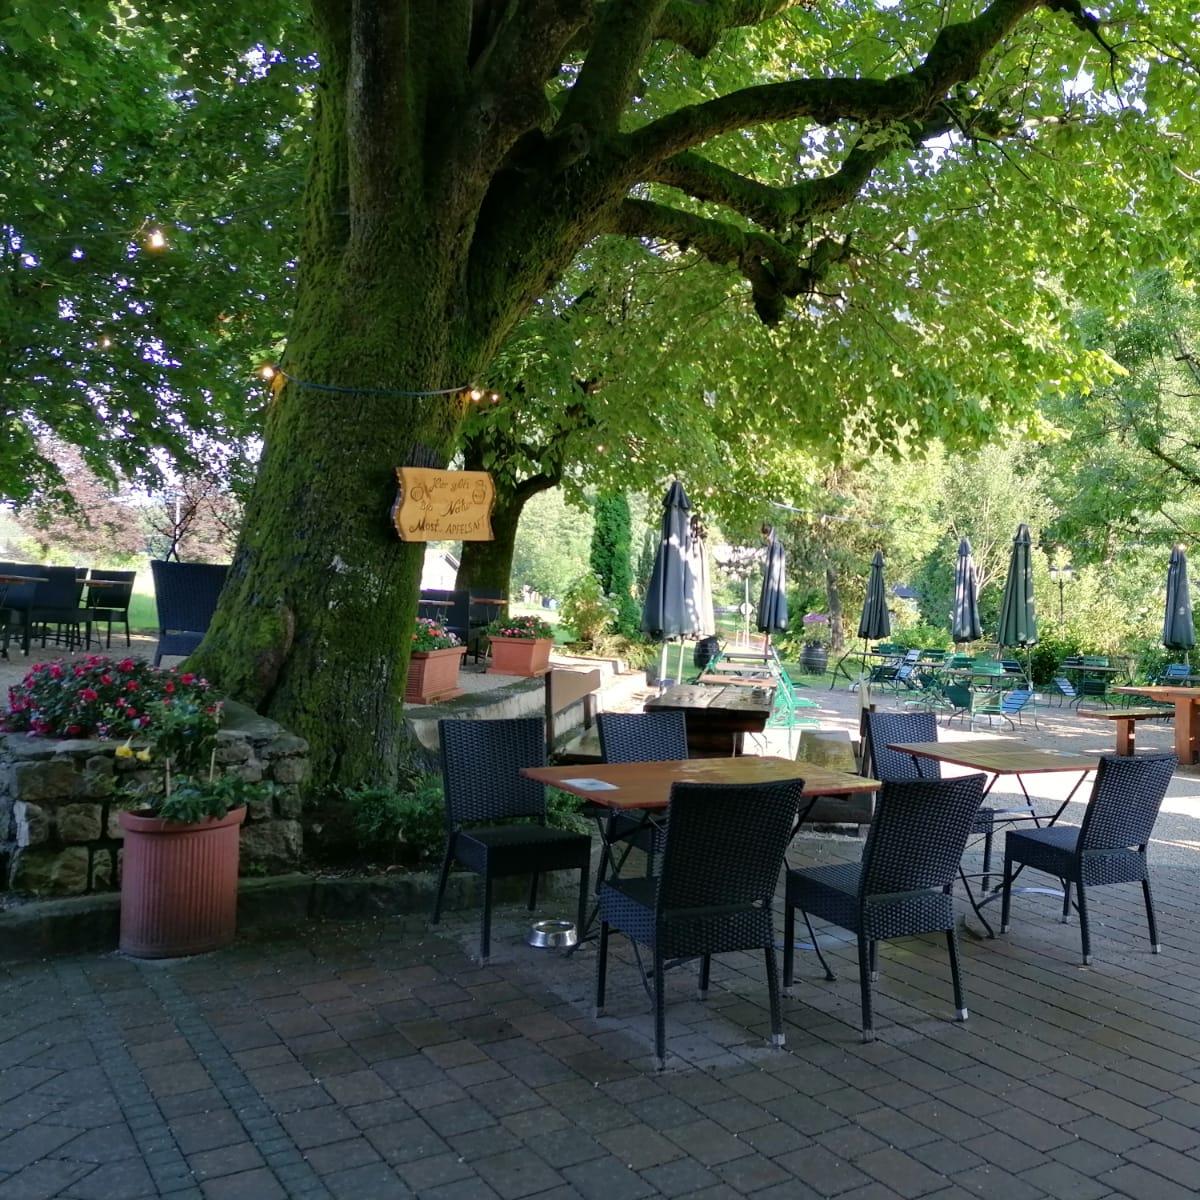 Restaurant "Gasthof See" in Unterach am Attersee